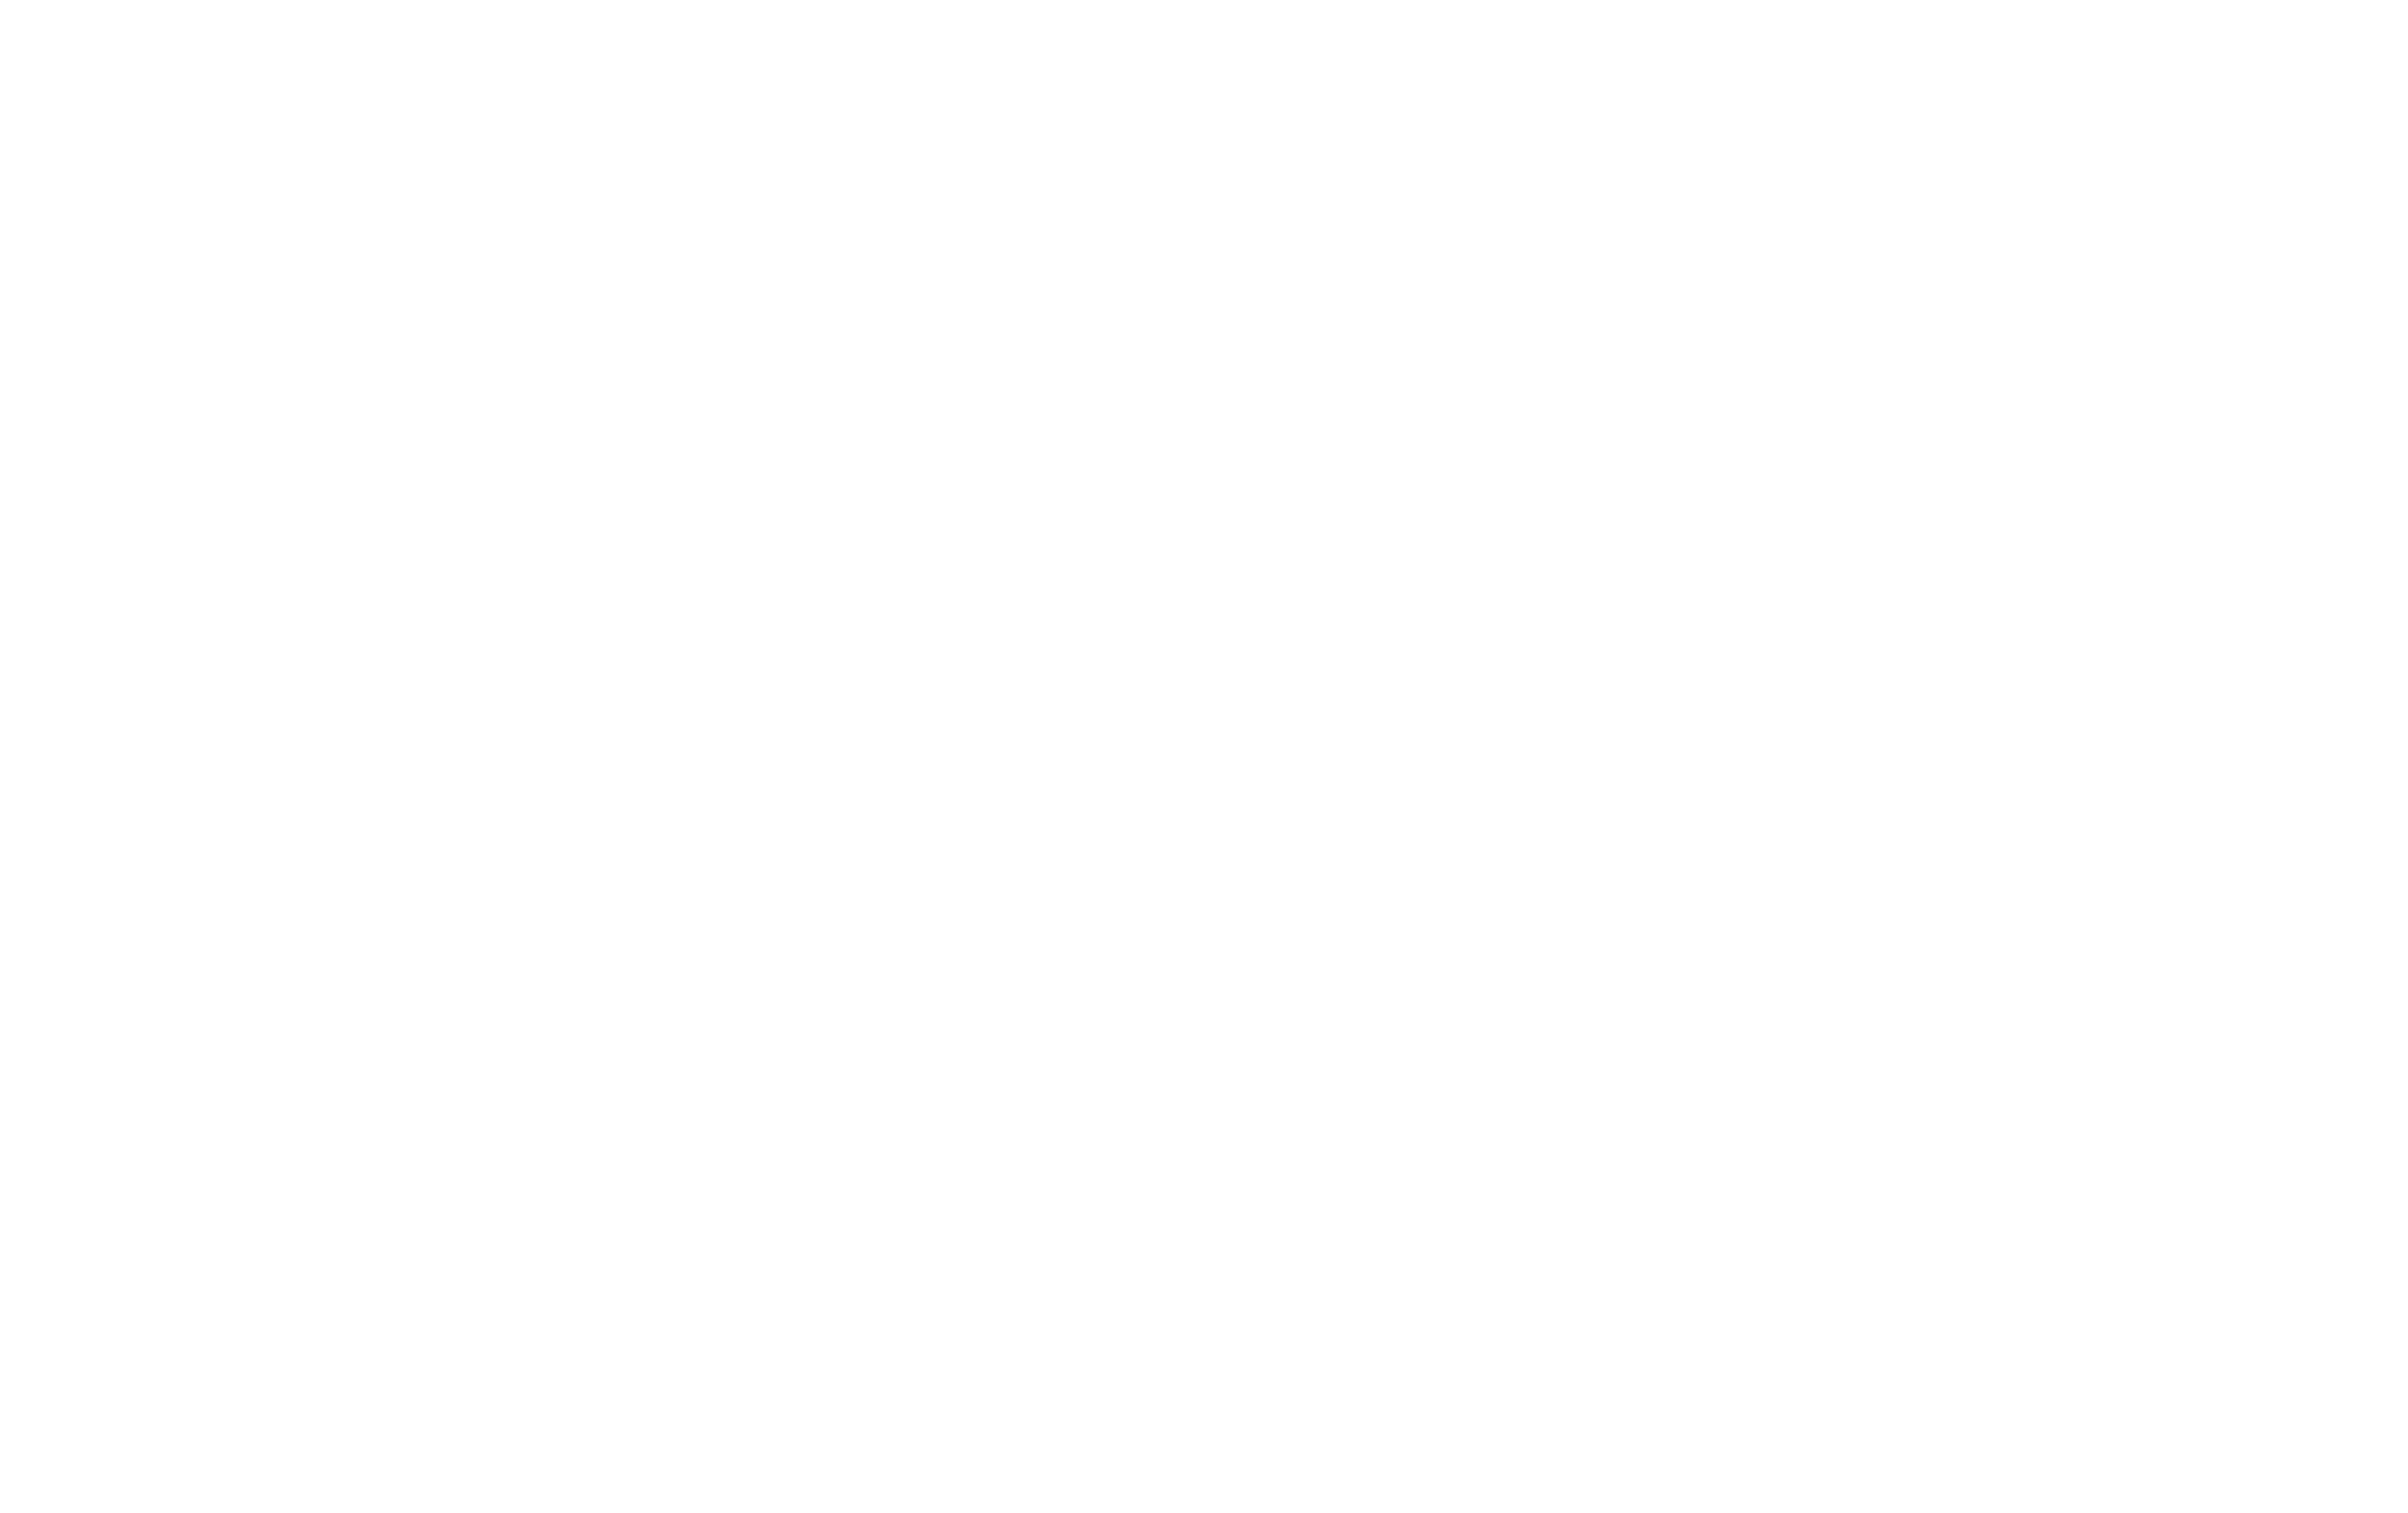 Taiko Sake